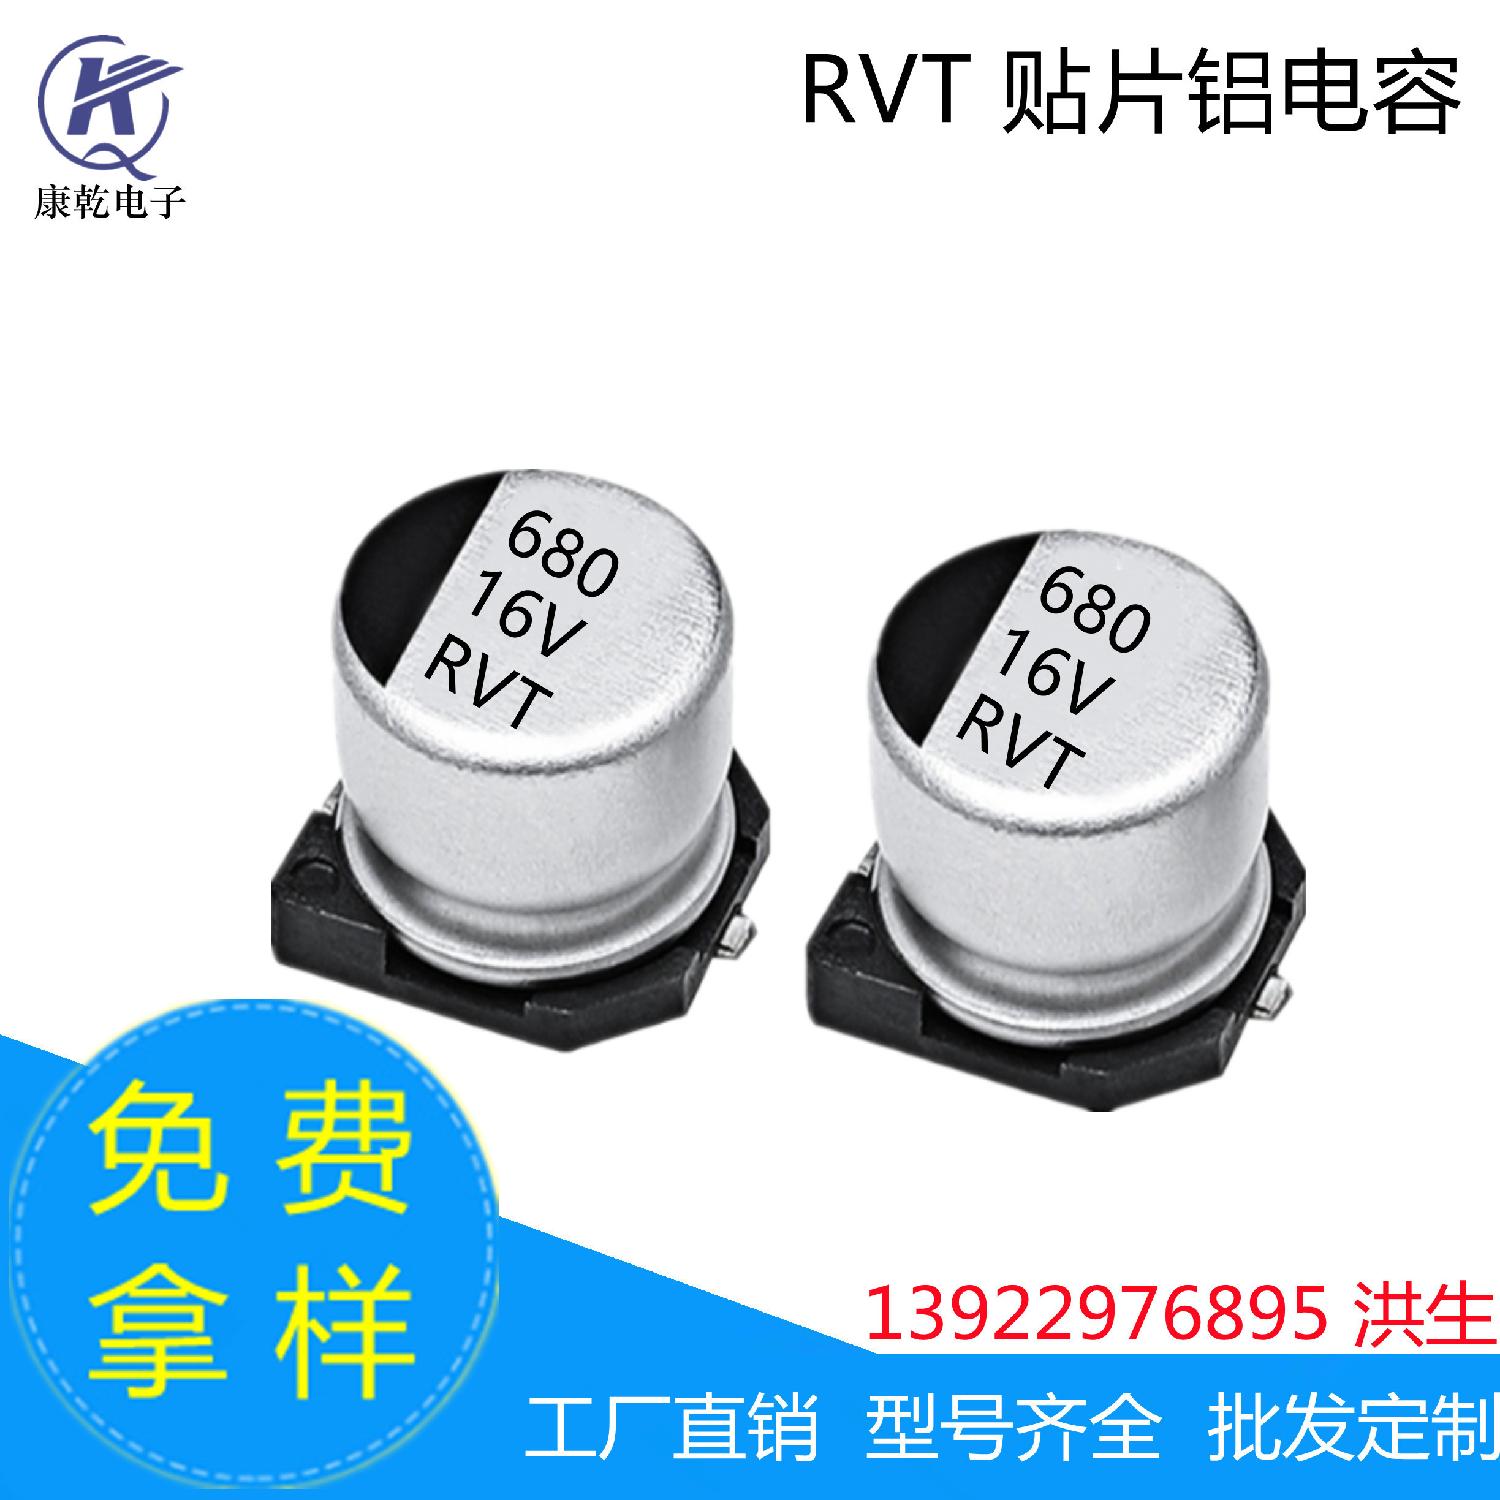 厂家现货RVT贴片铝电解电容器680uF 16V  10*10.2mm高品质 耐高温 680uF 16V